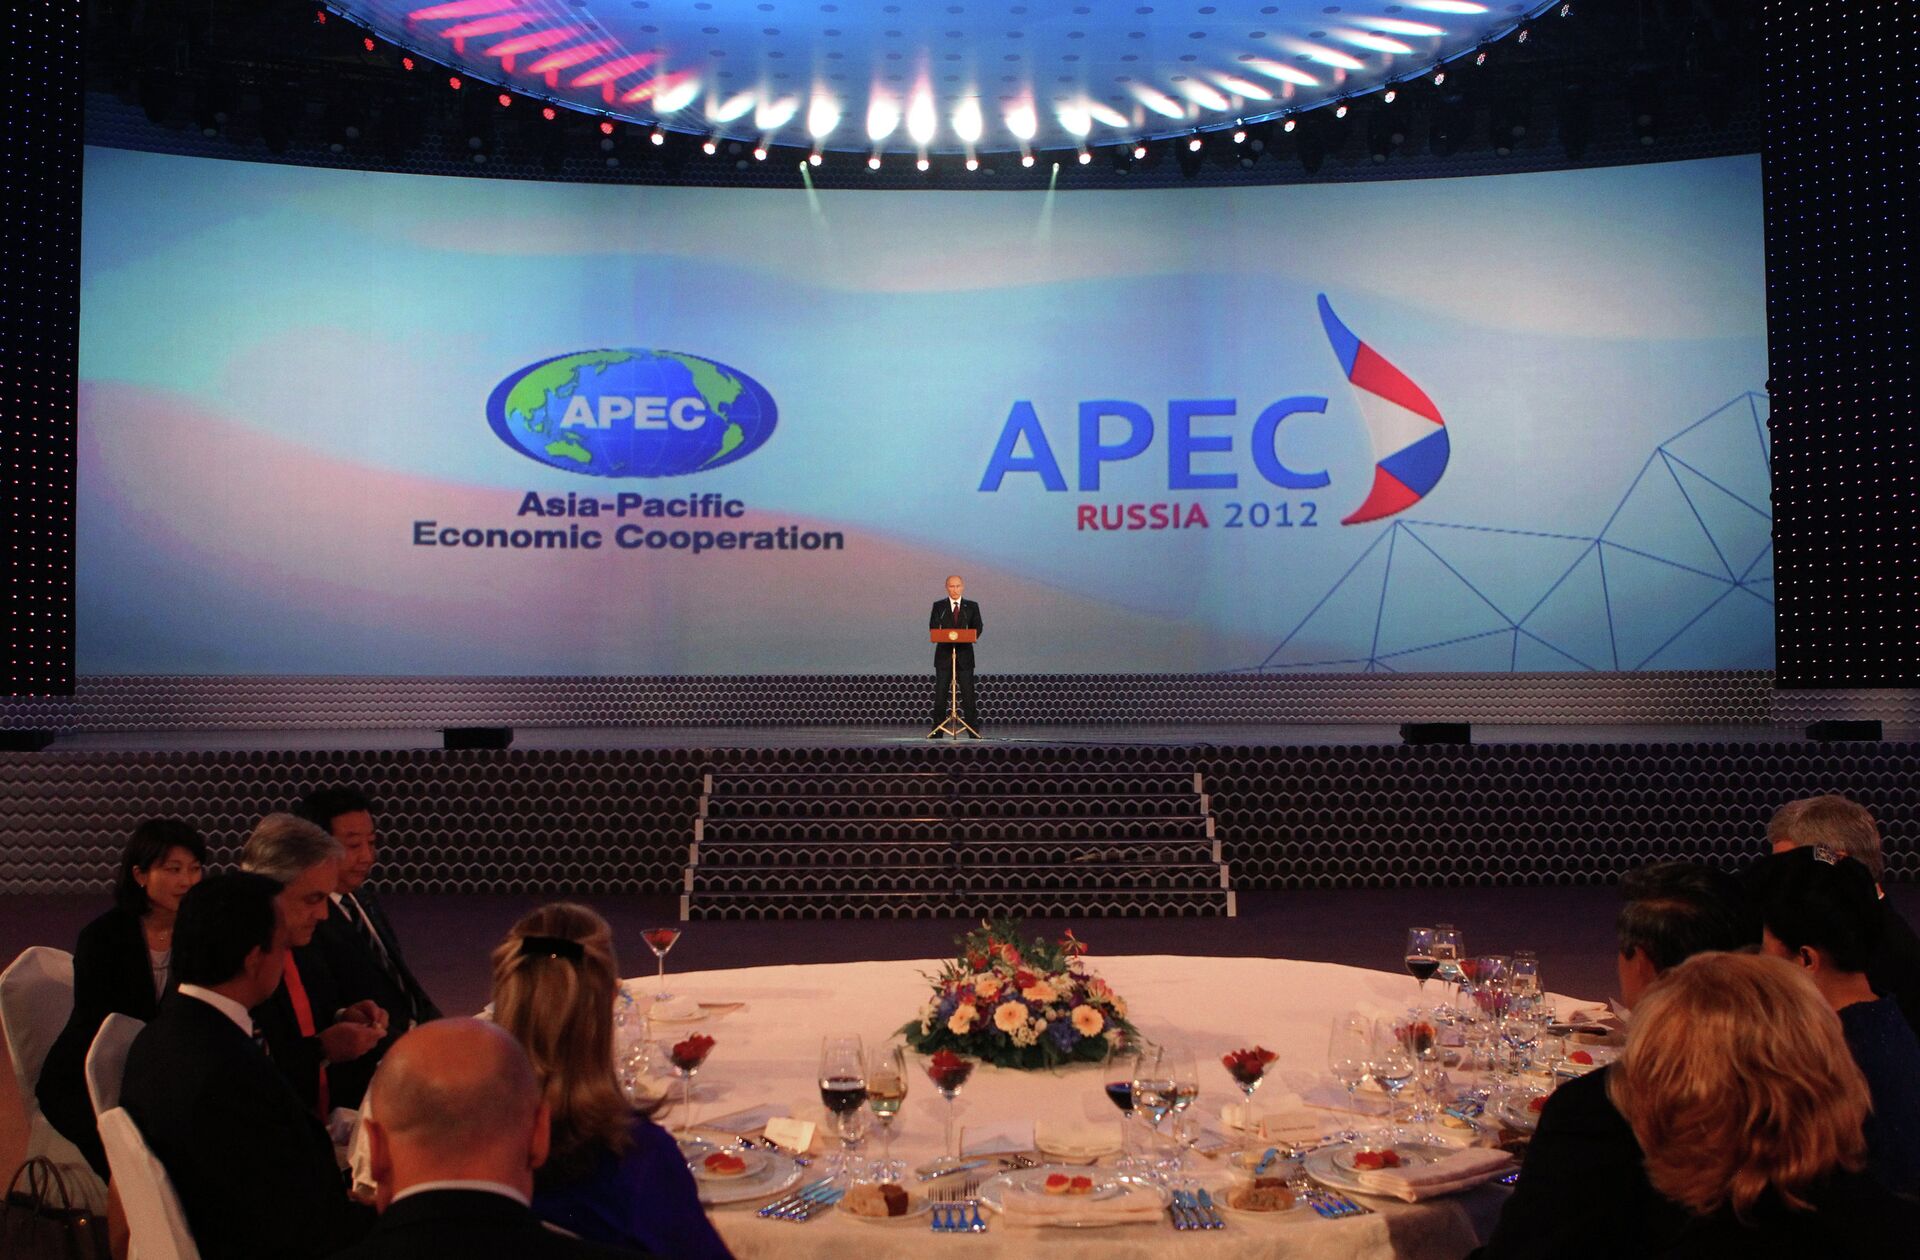 Атэс штаб квартира. Саммит АТЭС 2012 во Владивостоке. АТЭС APEC. Саммита АТЭС-2012 участники. Саммит АТЭС 2012 фото.